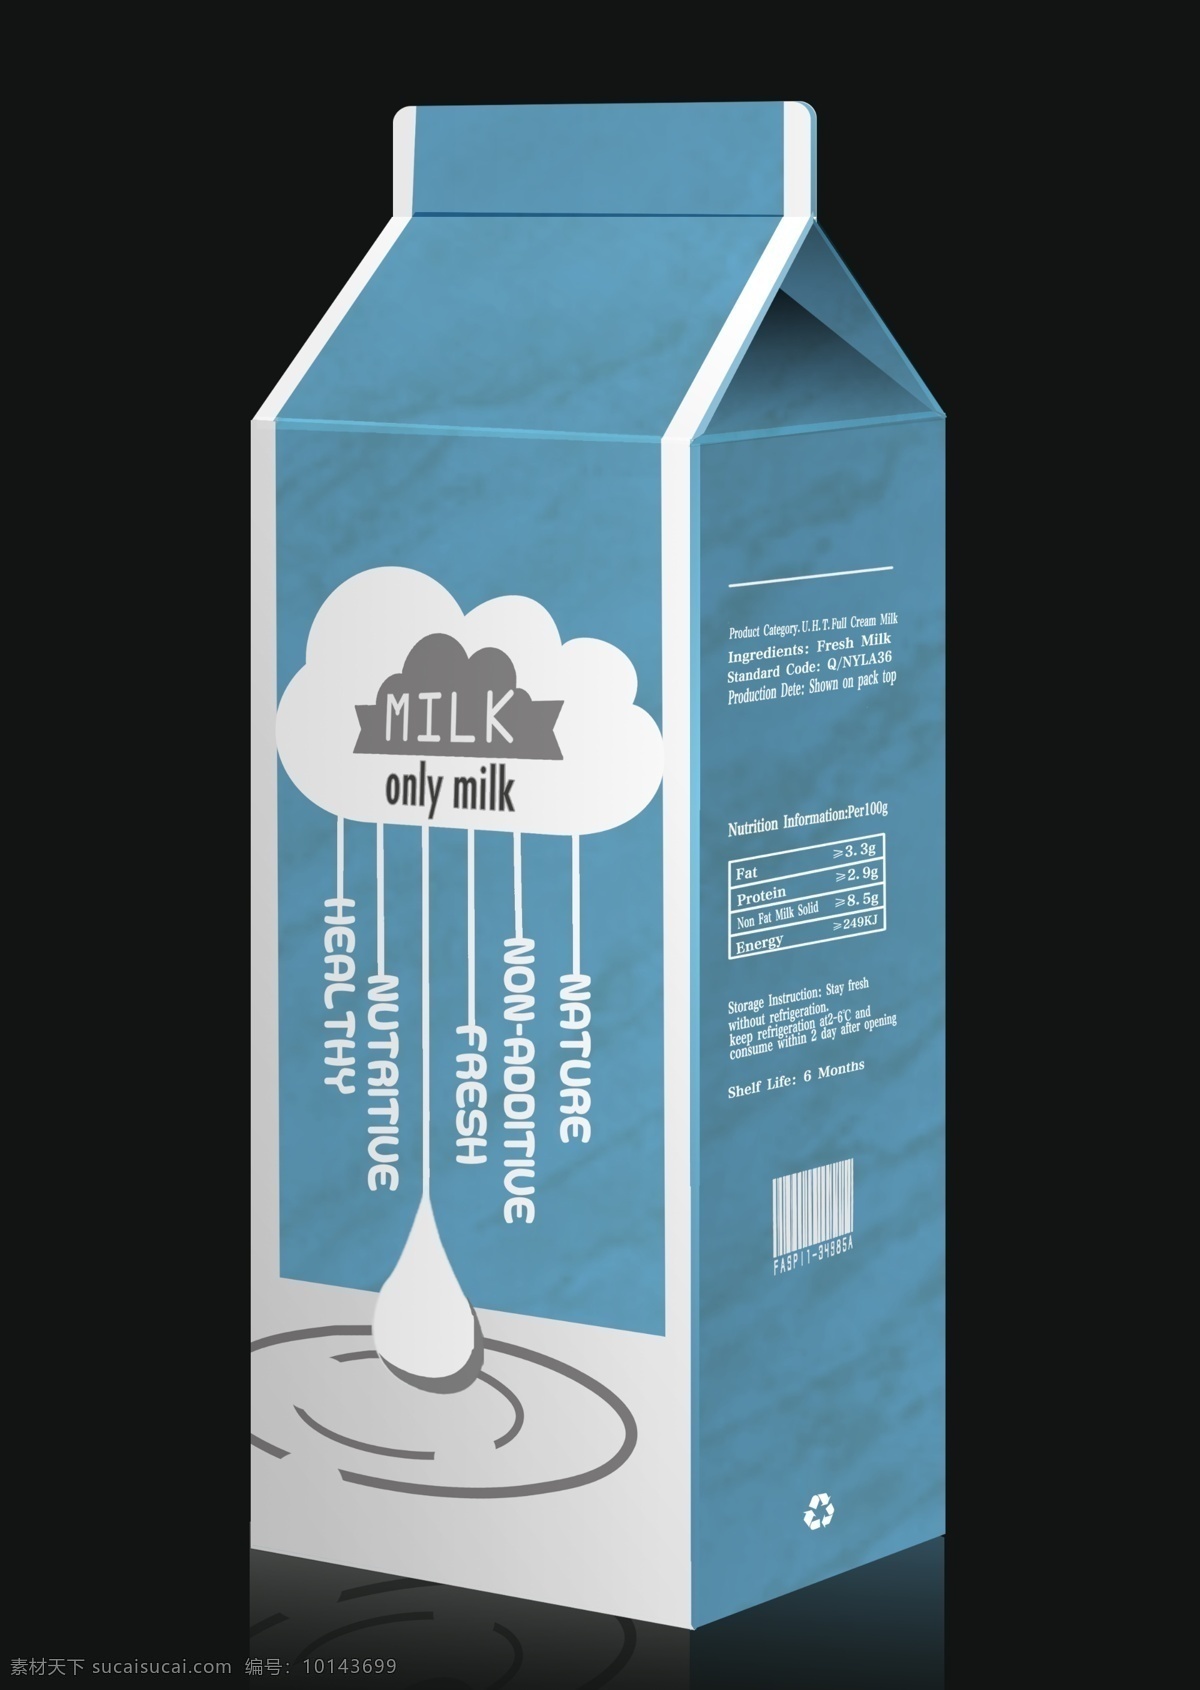 盒装 牛奶 包装设计 牛奶盒 包装盒 立体效果图 广告设计模板 源文件